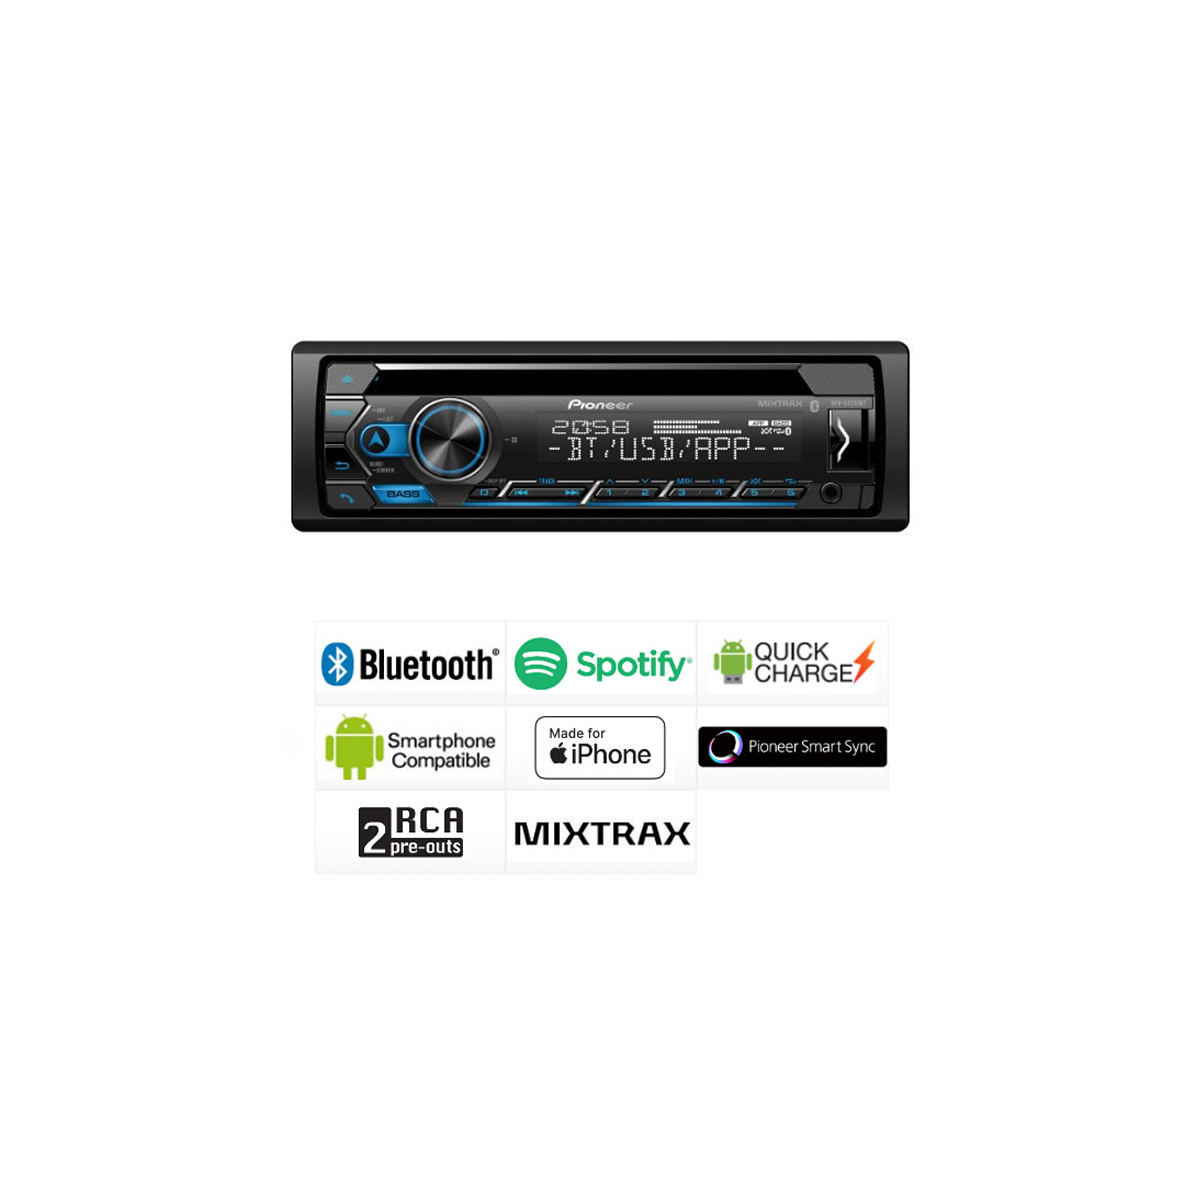 PIONEER Autorradio CD / USB / BT PIONEER DEH-3900BT Radio CD con  sintonizador RDS, Bluetooth, entrada auxiliar y USB. Soporta control  directo de iPod/iPhone: 139,15 € - RECAMBIOS NN